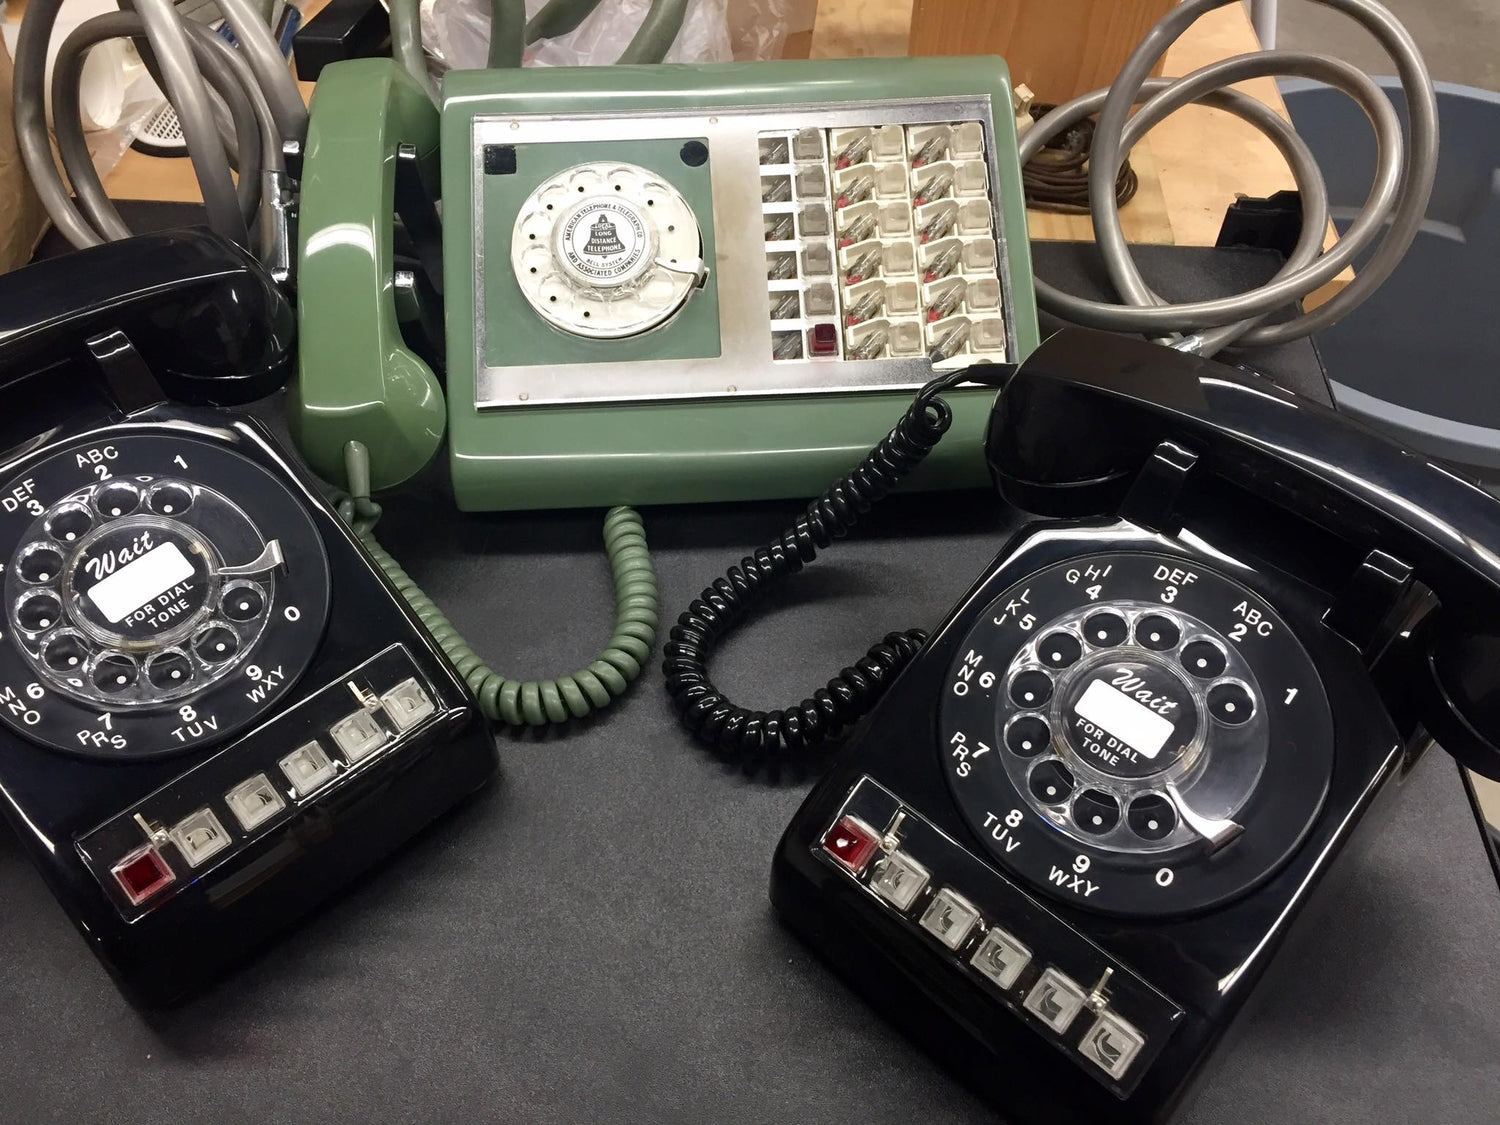 Magic 8 Ball Novelty Telephone – oldphoneworks